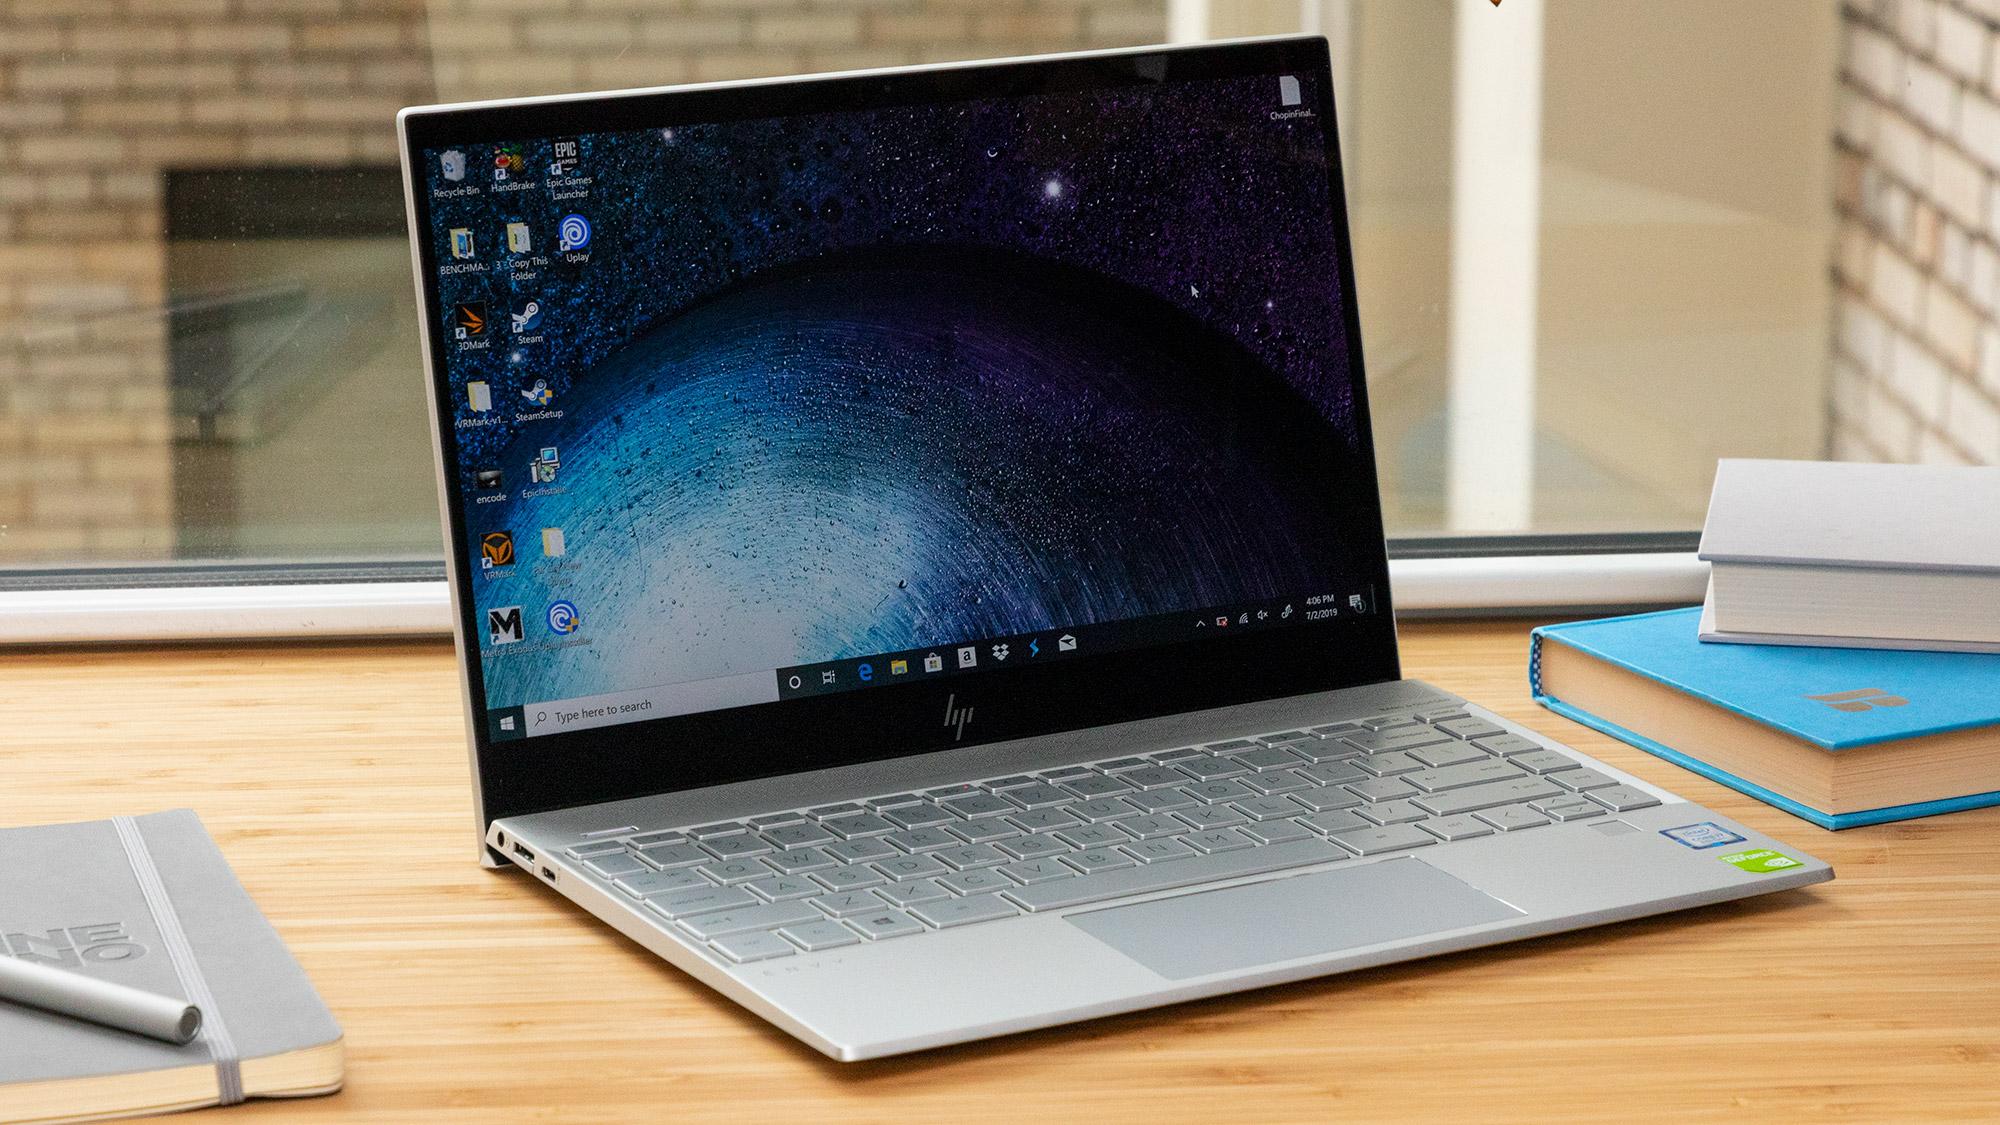 Thiết kế gọn nhẹ của sản phẩm laptop 13 inch đến từ nhà HP